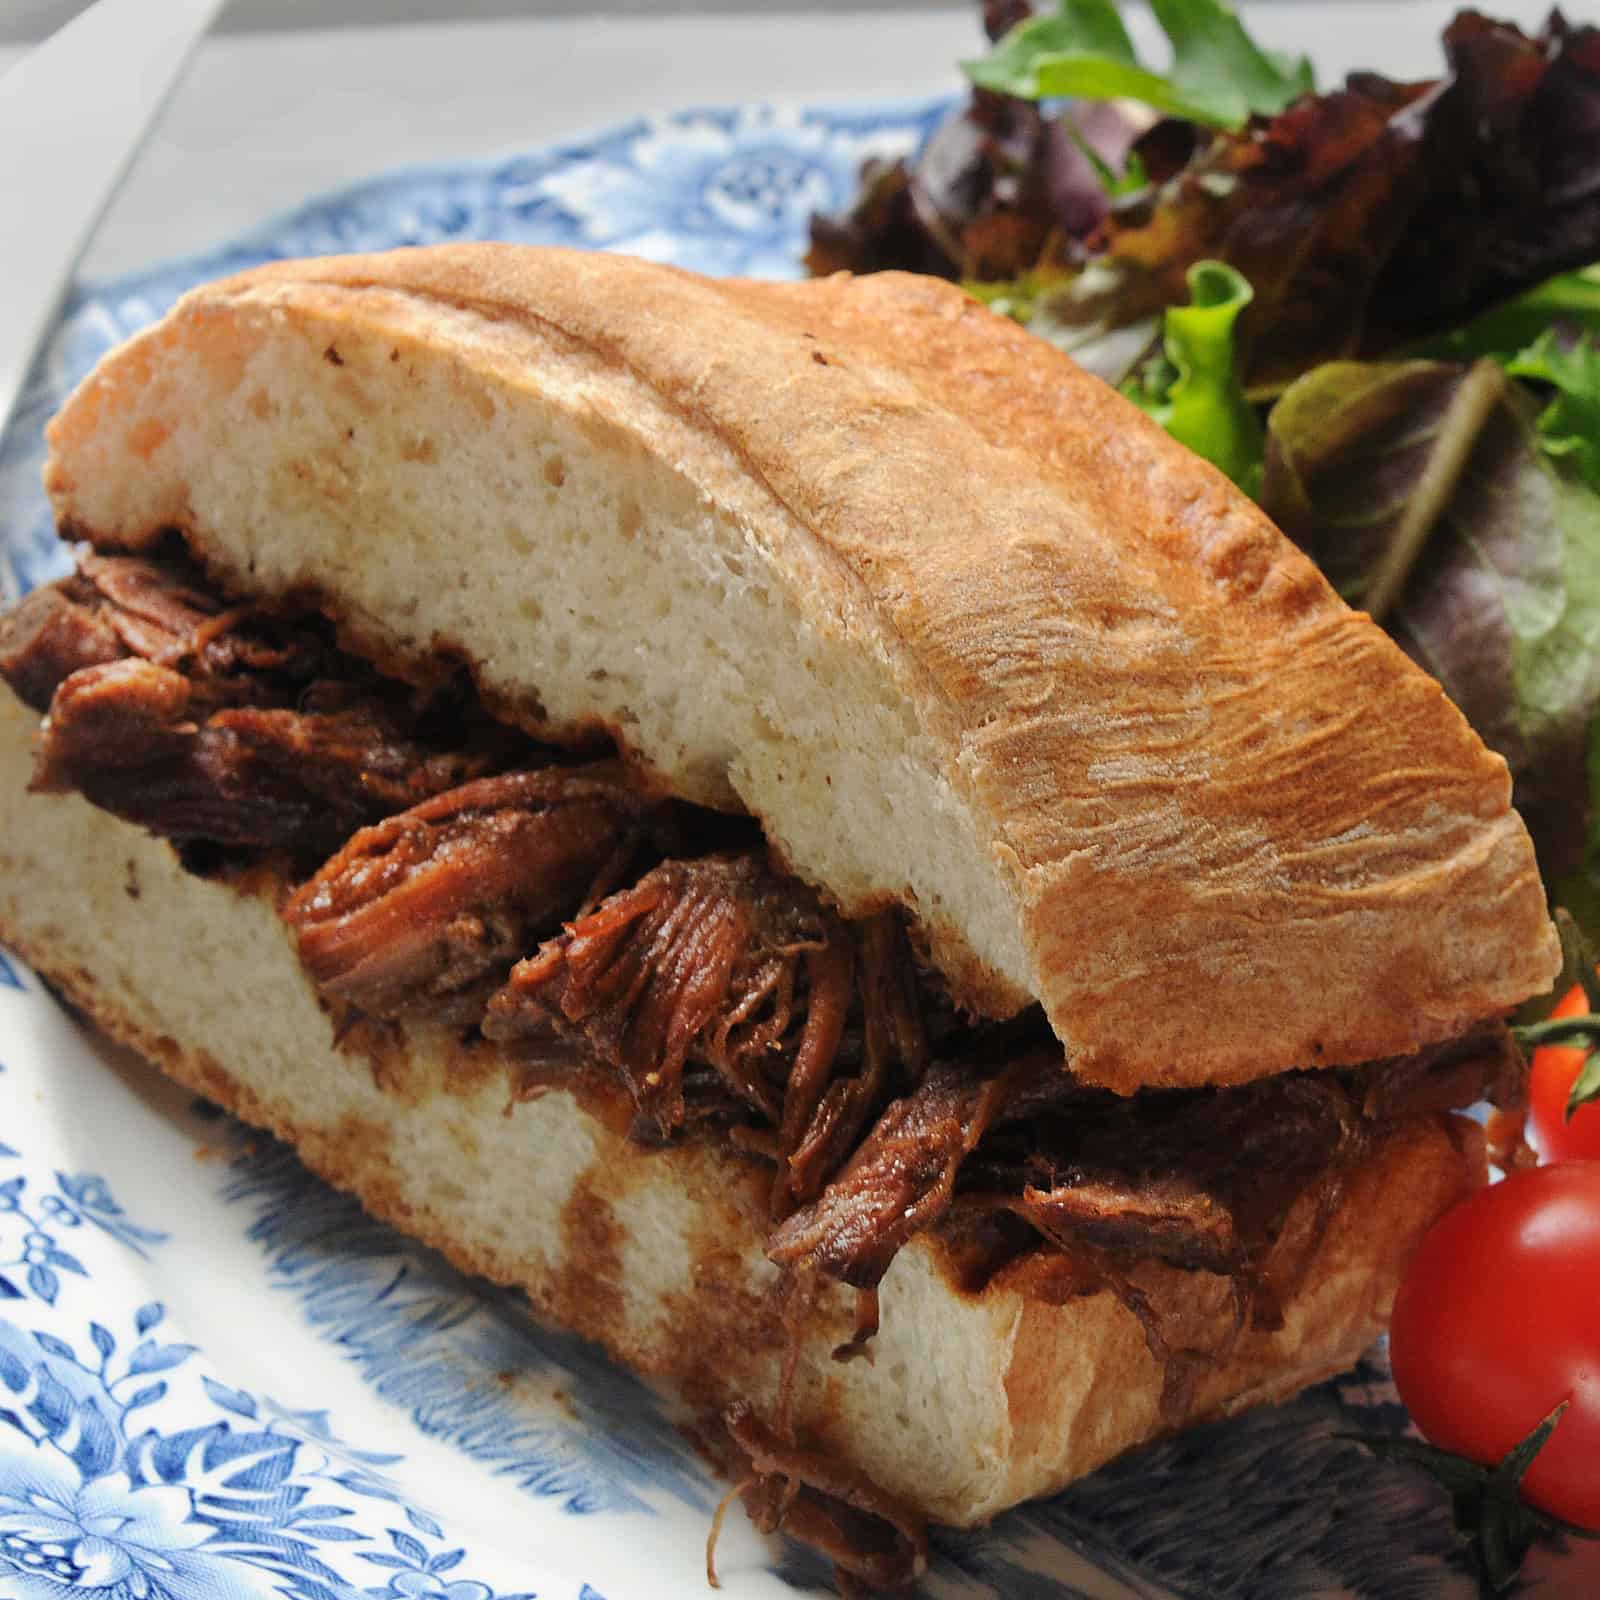 Beef Au Jus Sandwich on Crusty French bread